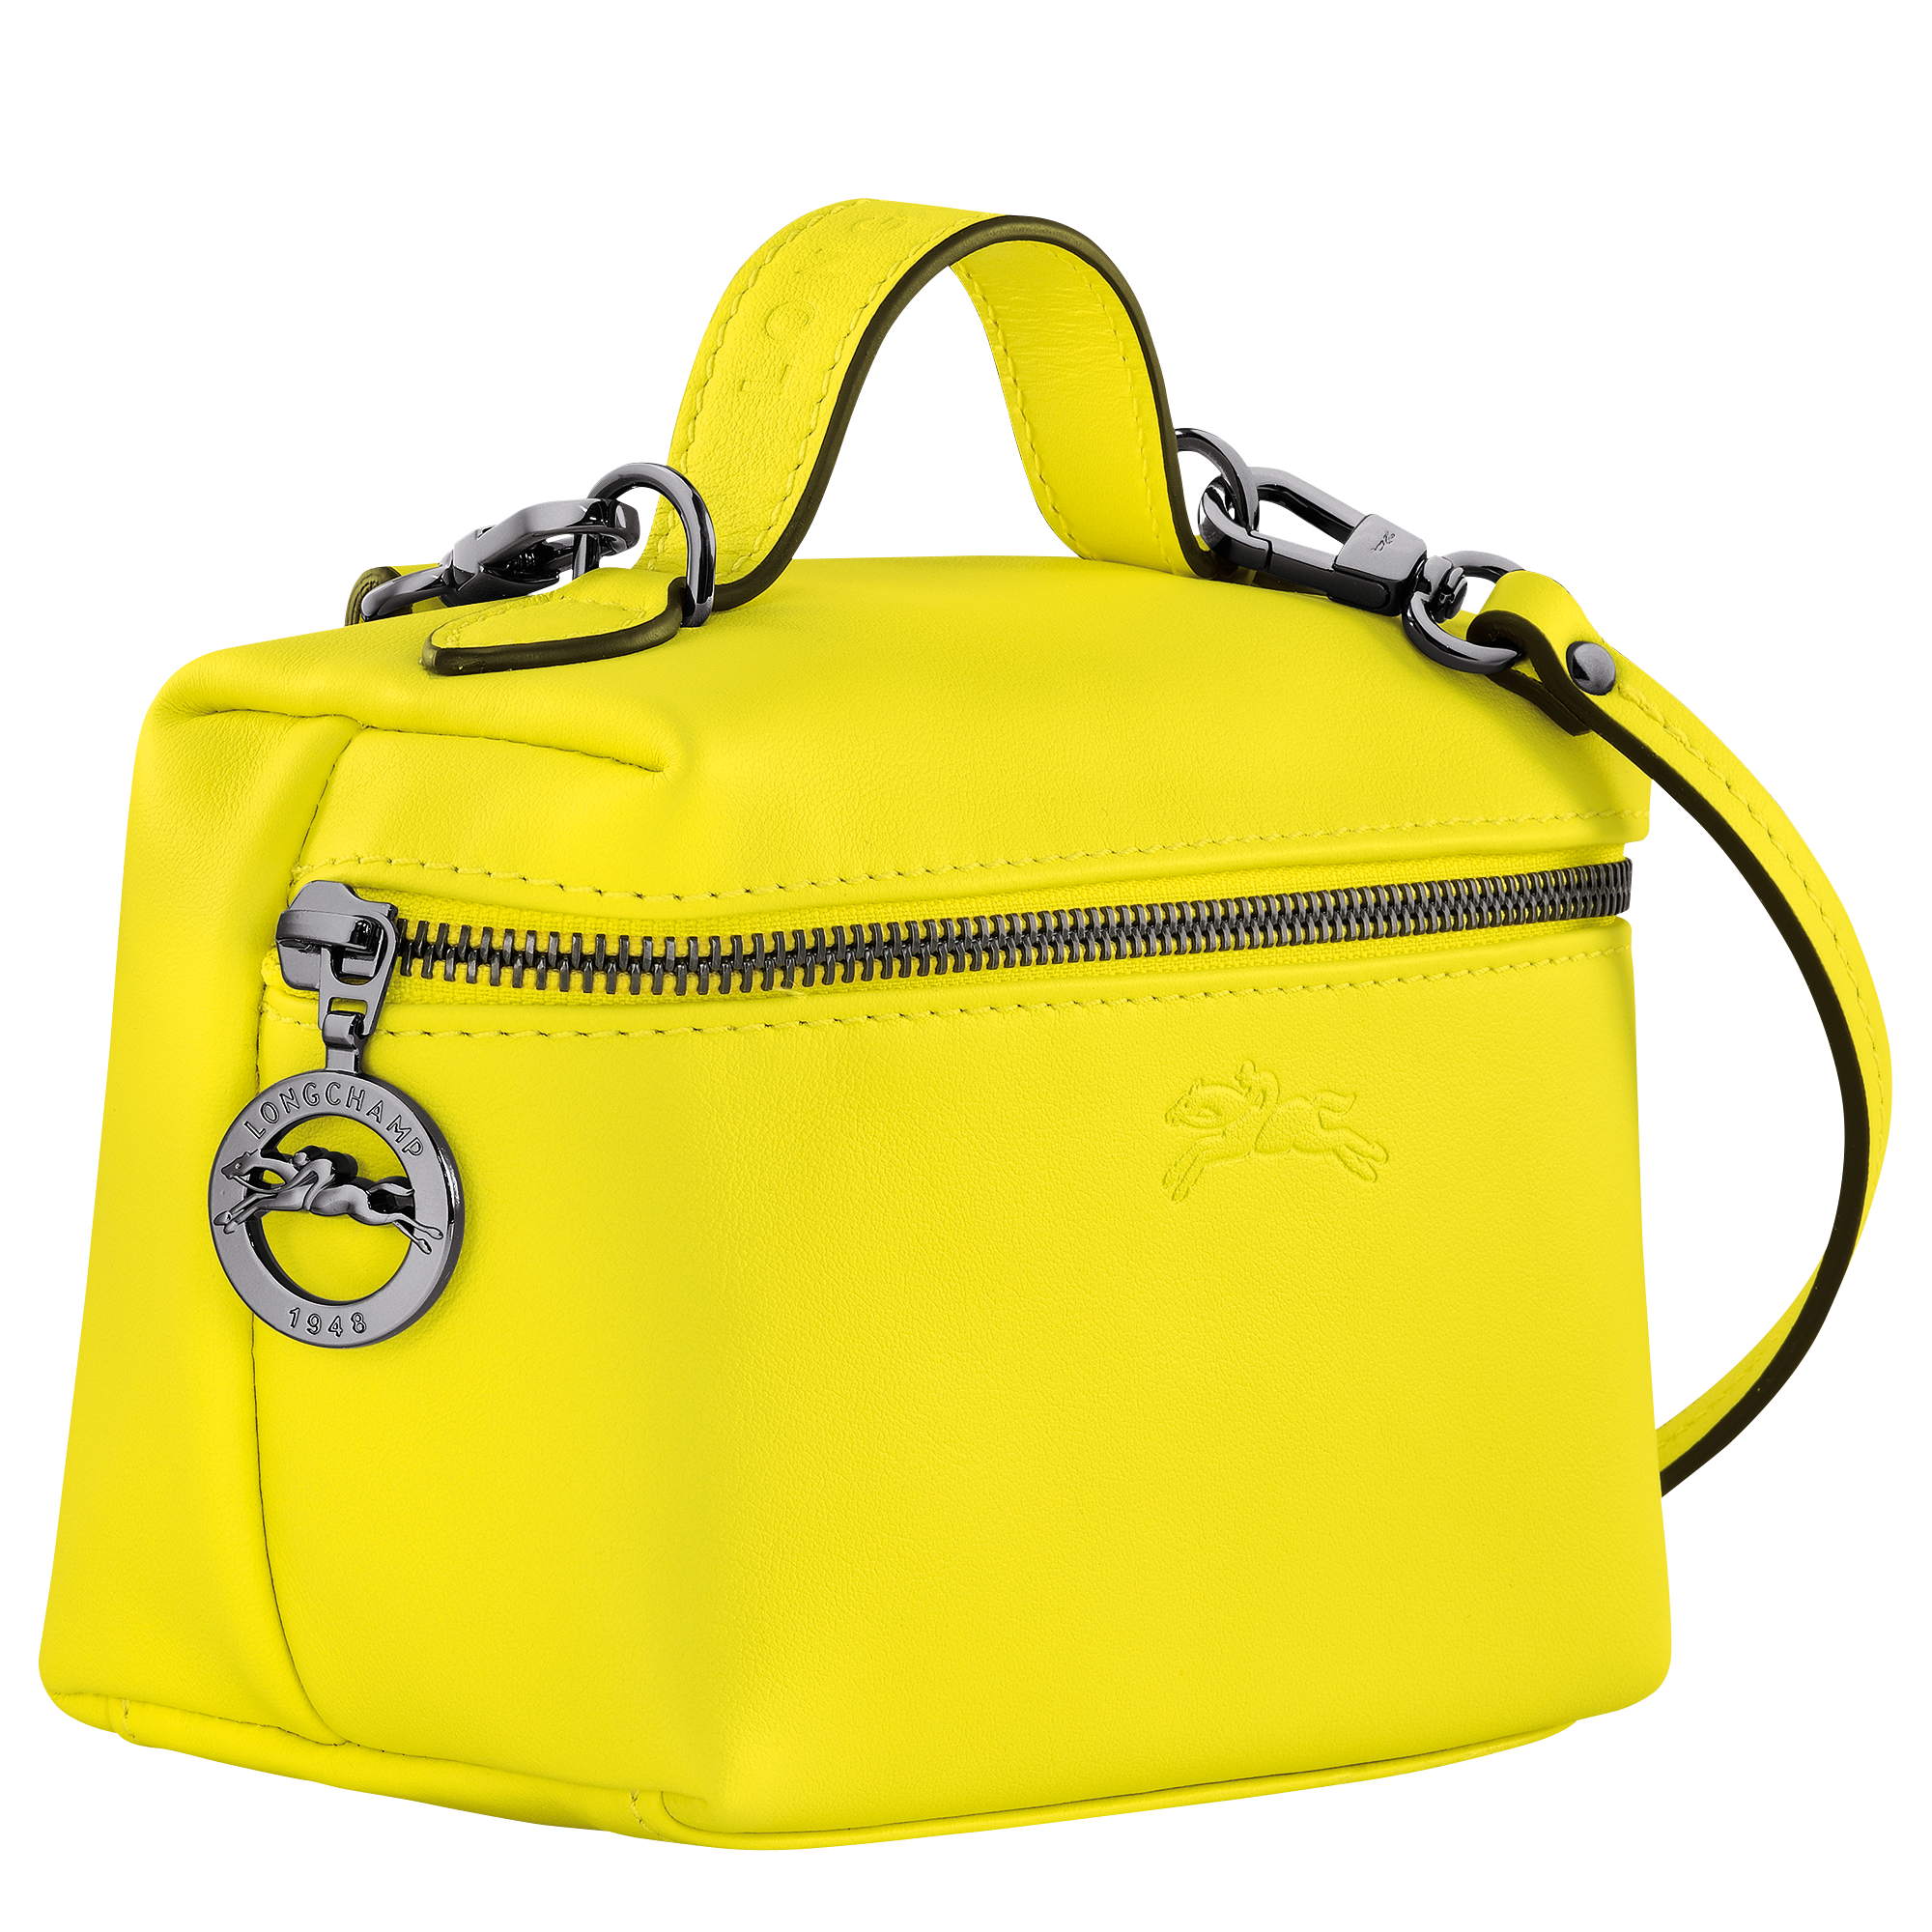 Longchamp Le Pliage Filet Cross Body Bag, Lemon